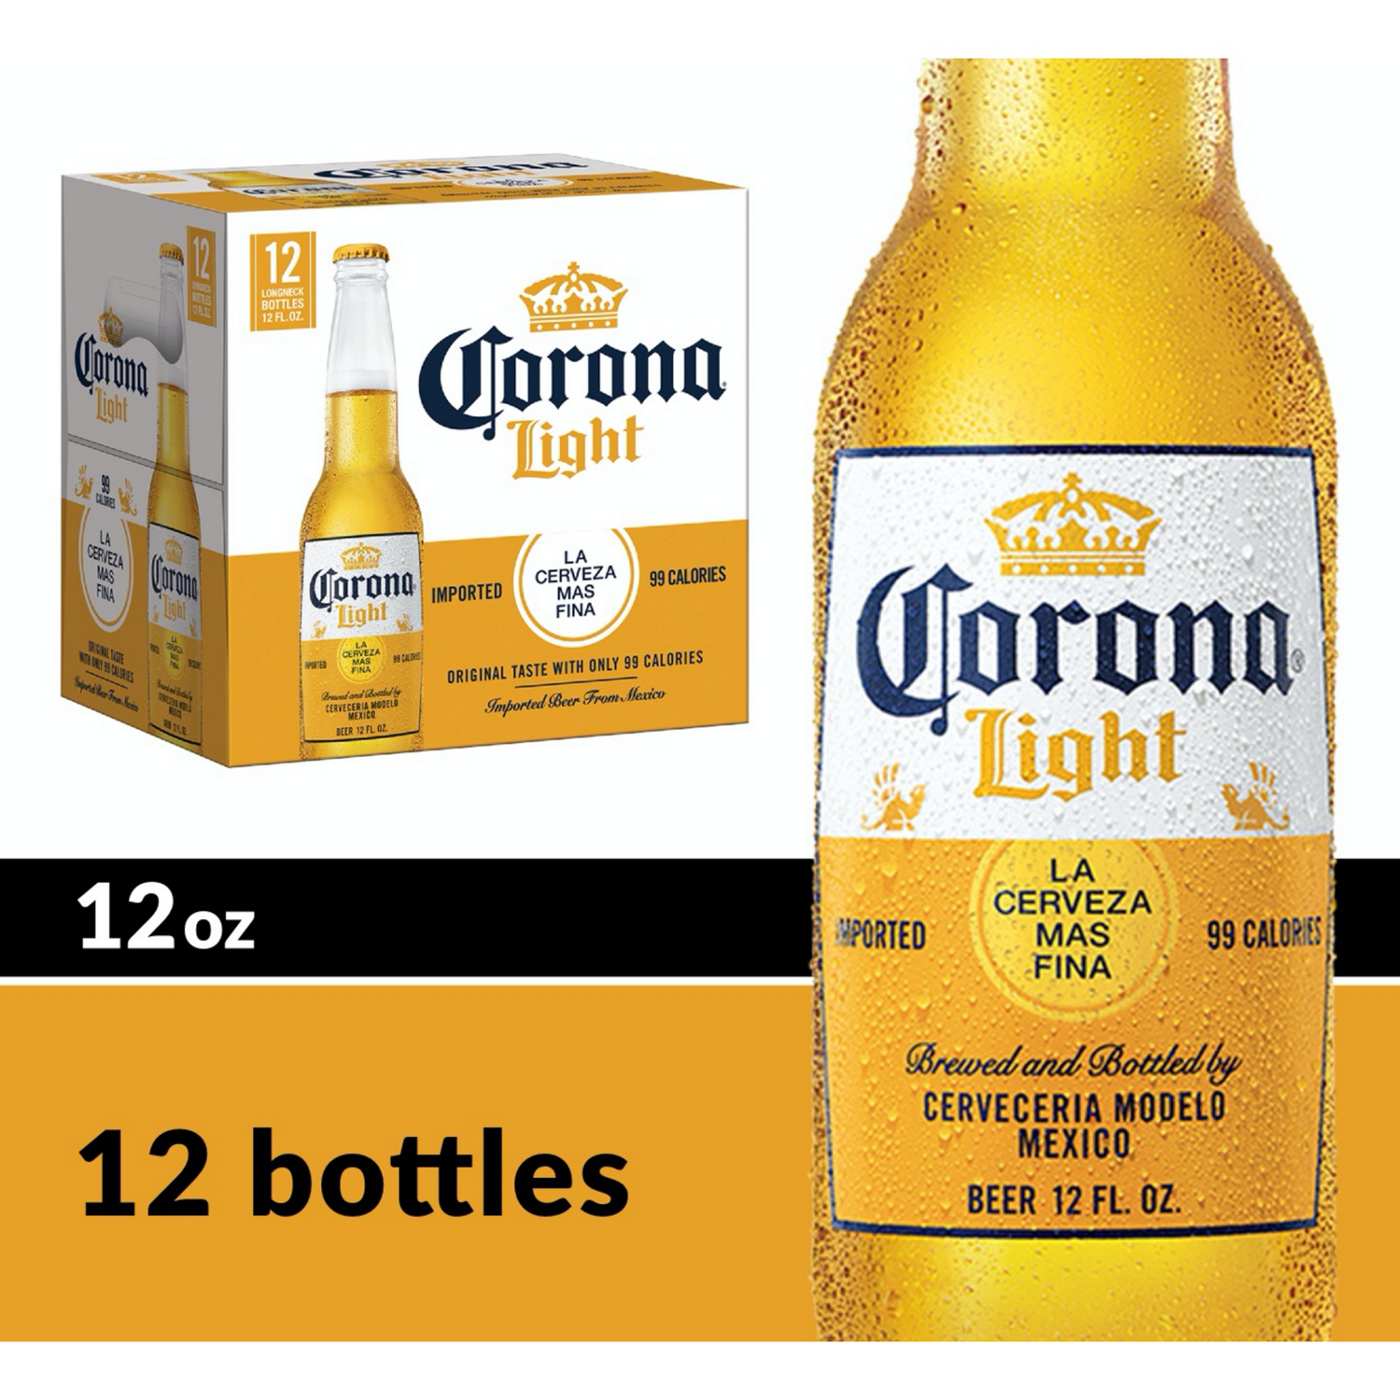 Corona Light Mexican Lager Import Light Beer 12 oz Bottles, 12 pk; image 4 of 10